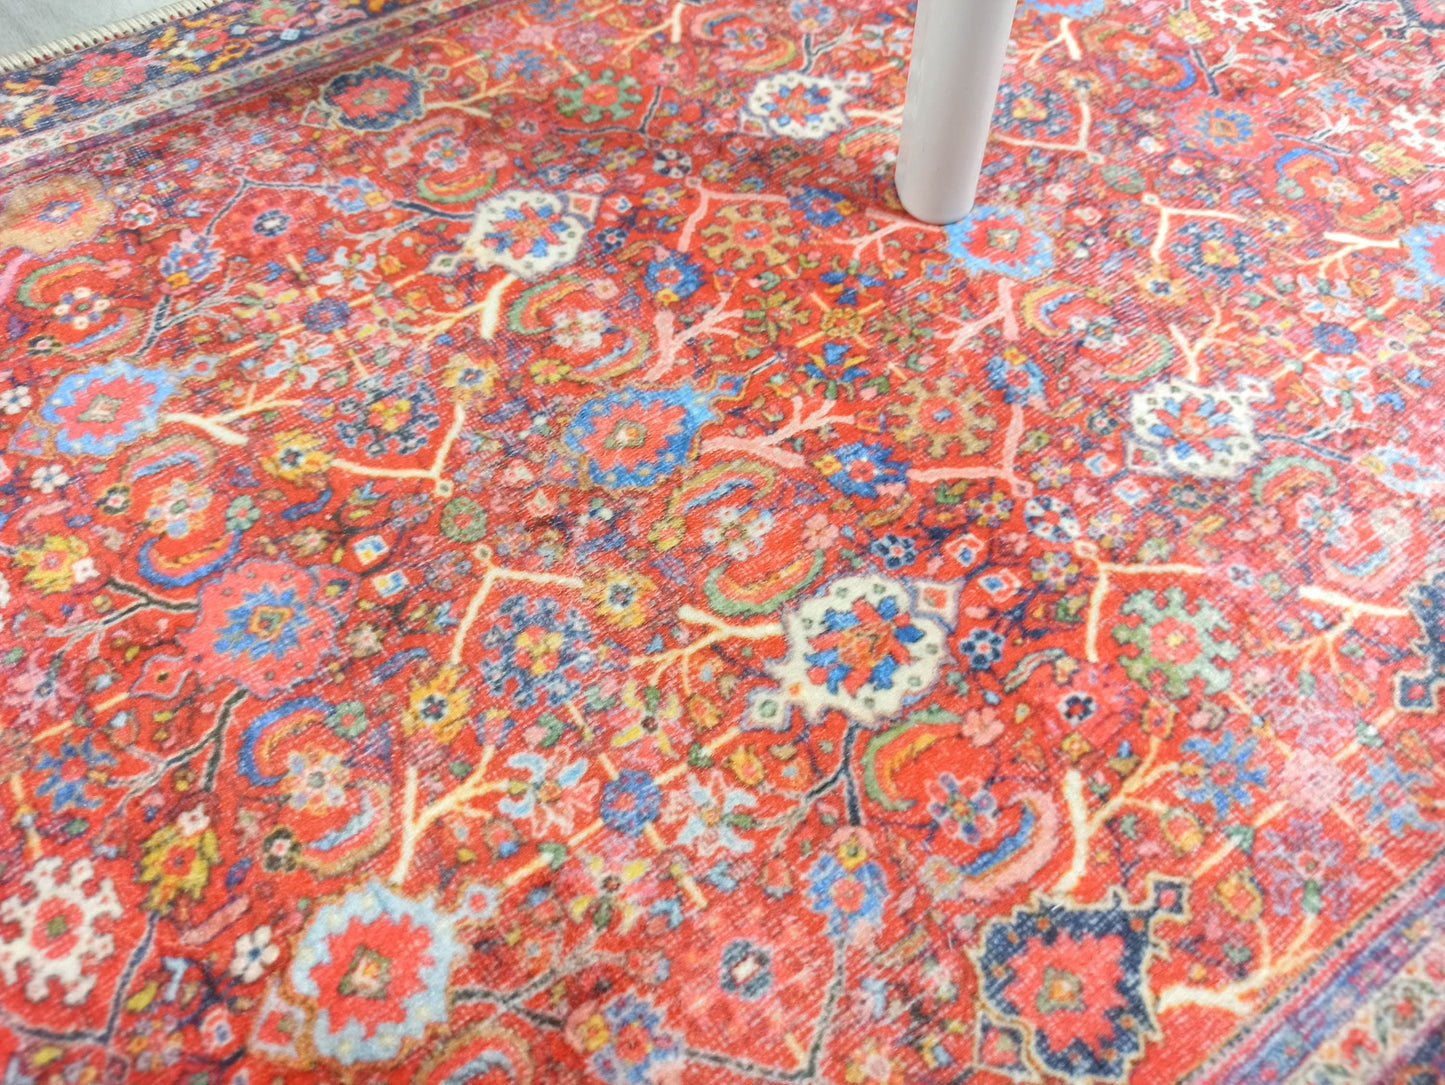 2x3 Turkish Rug, Red Oushak Vintage Brunt Orange Floral Entryway Door Floor Rug Non slip Bath mat, Bathroom mats Kitchen Doormat Rugs Decor - famerugs